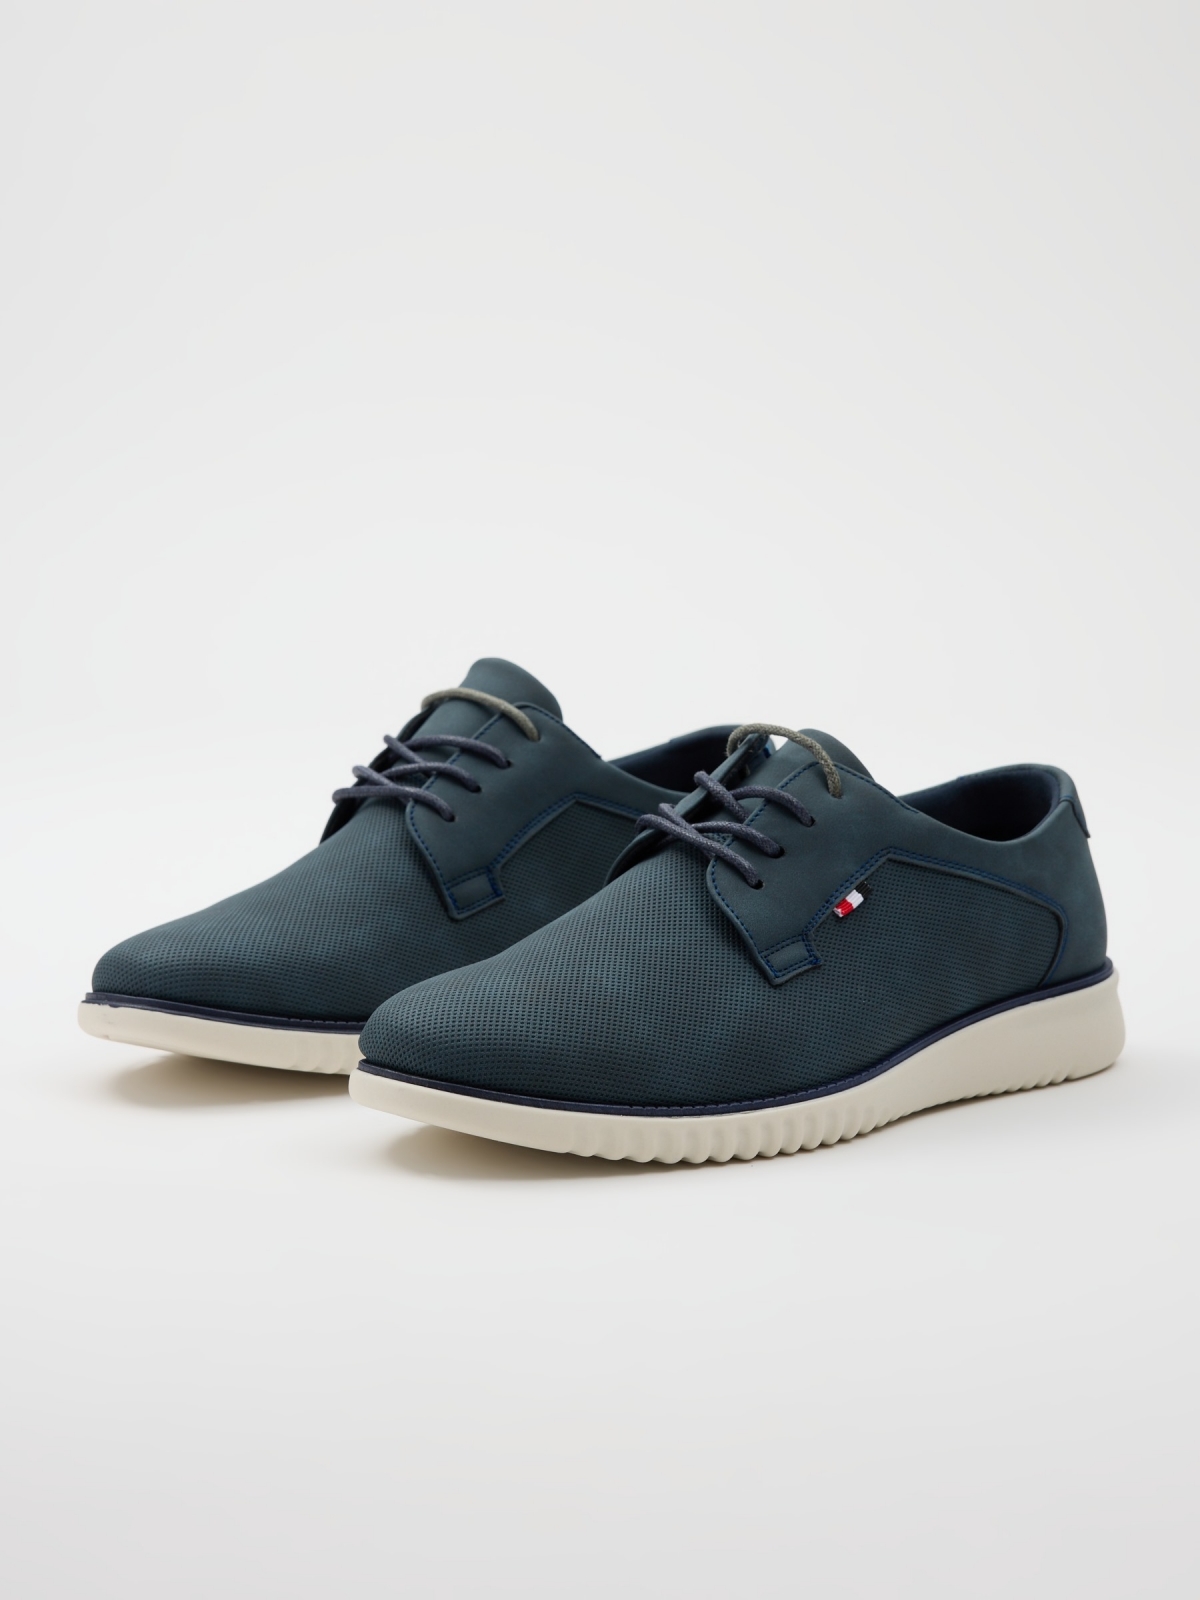 Zapato clásico sport azul marino vista frontal 45º